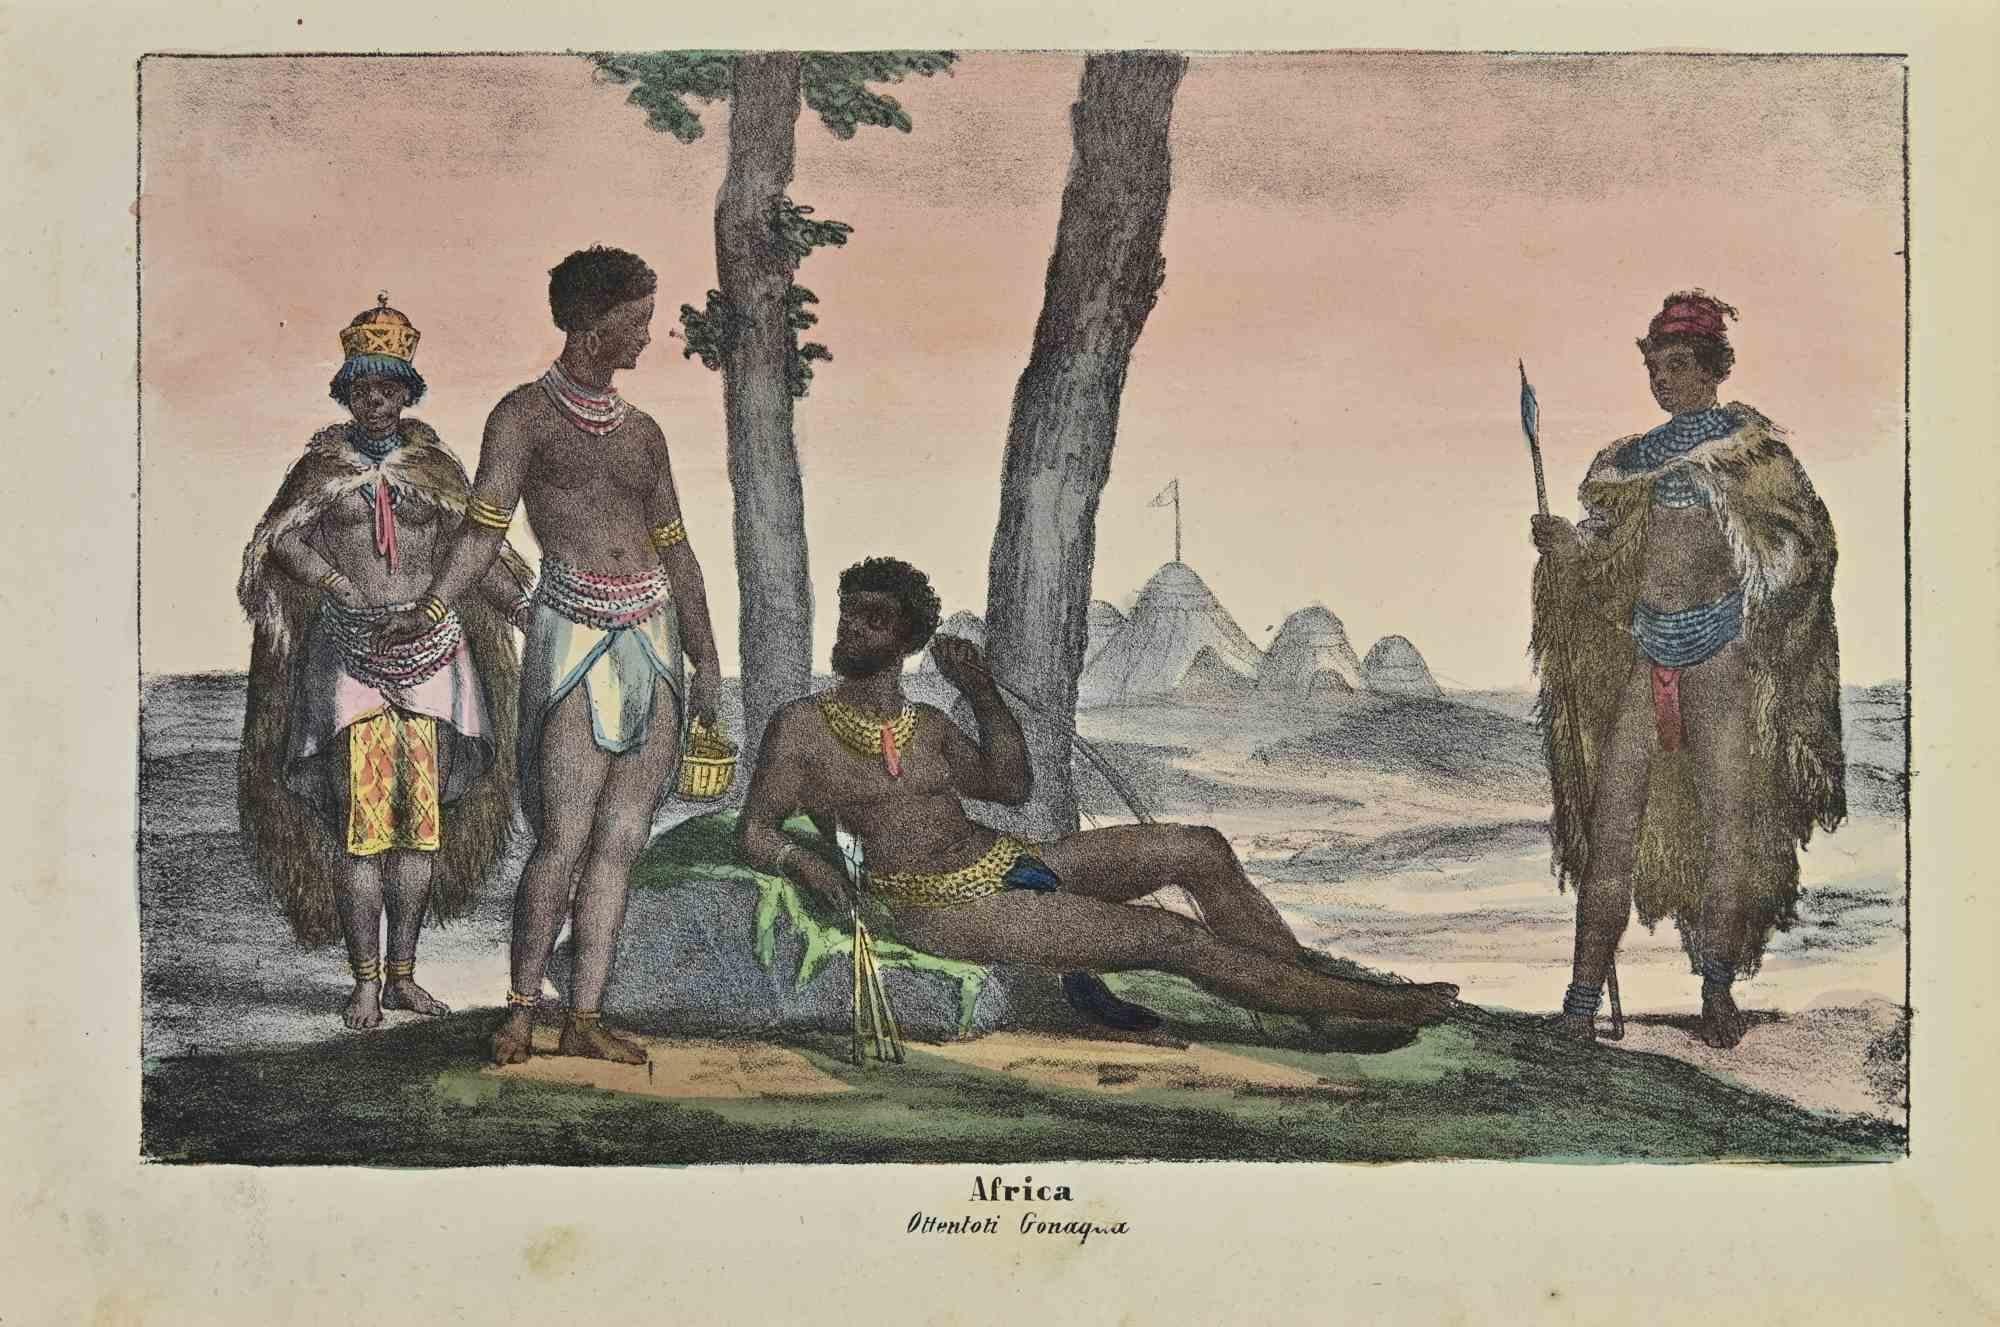 Ancient African Customs ist eine Lithographie von Auguste Wahlen aus dem Jahr 1844.

Handgefärbt.

Guter Zustand.

Im Zentrum des Kunstwerks steht der Originaltitel "Africa" und der Untertitel "Ottentoti Gonaqua".

Das Werk ist Teil der Suite